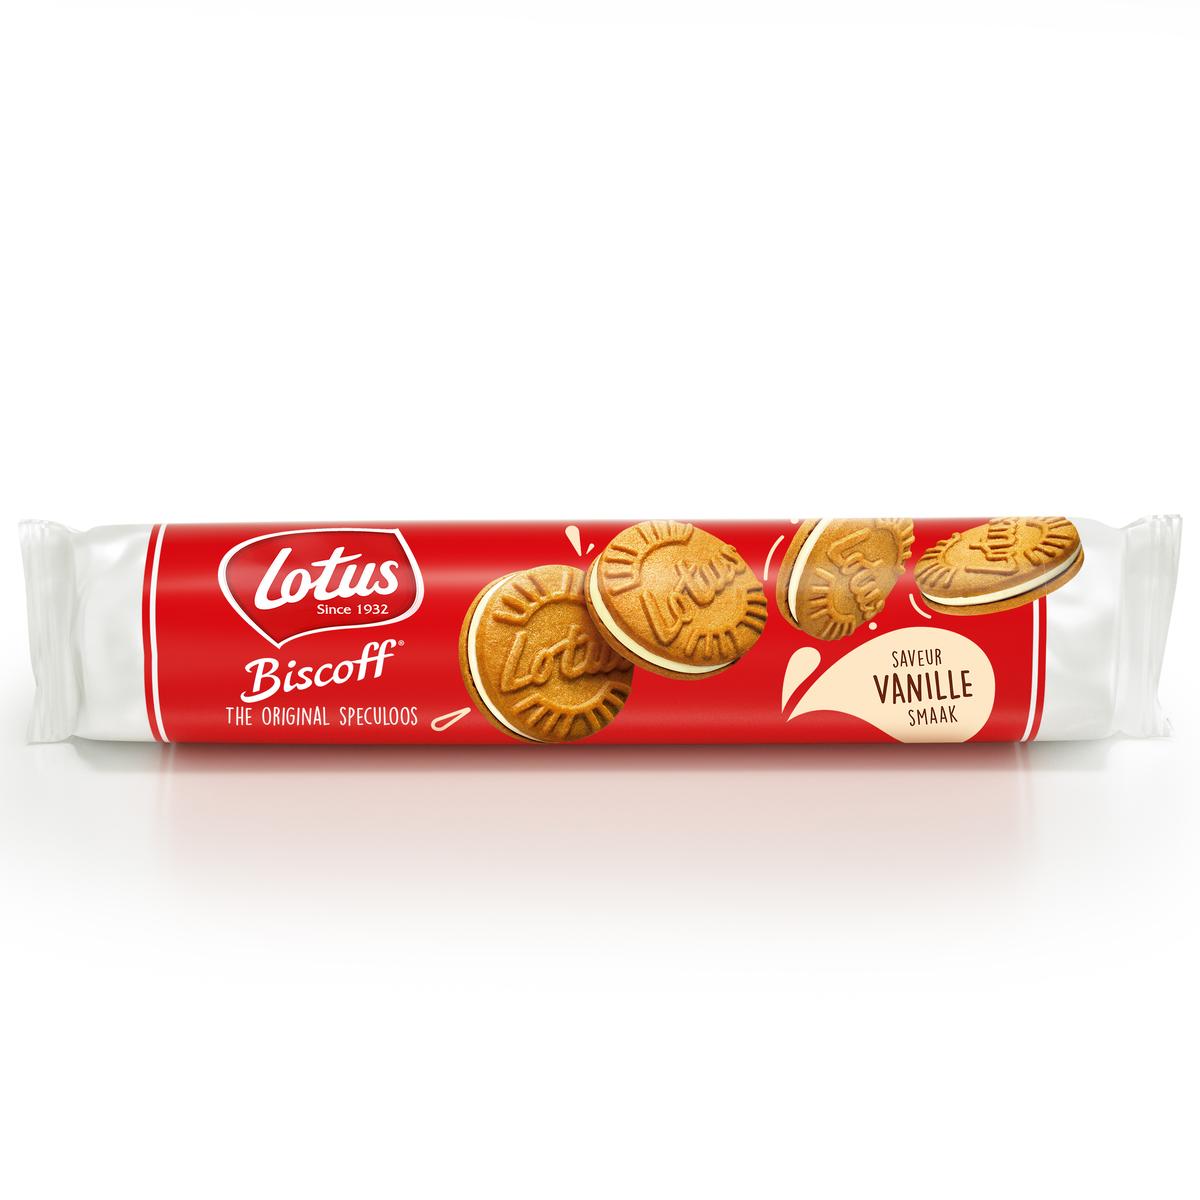 Biscuits fourrés crème spéculoos LOTUS BISCOFF : le paquet de 150g